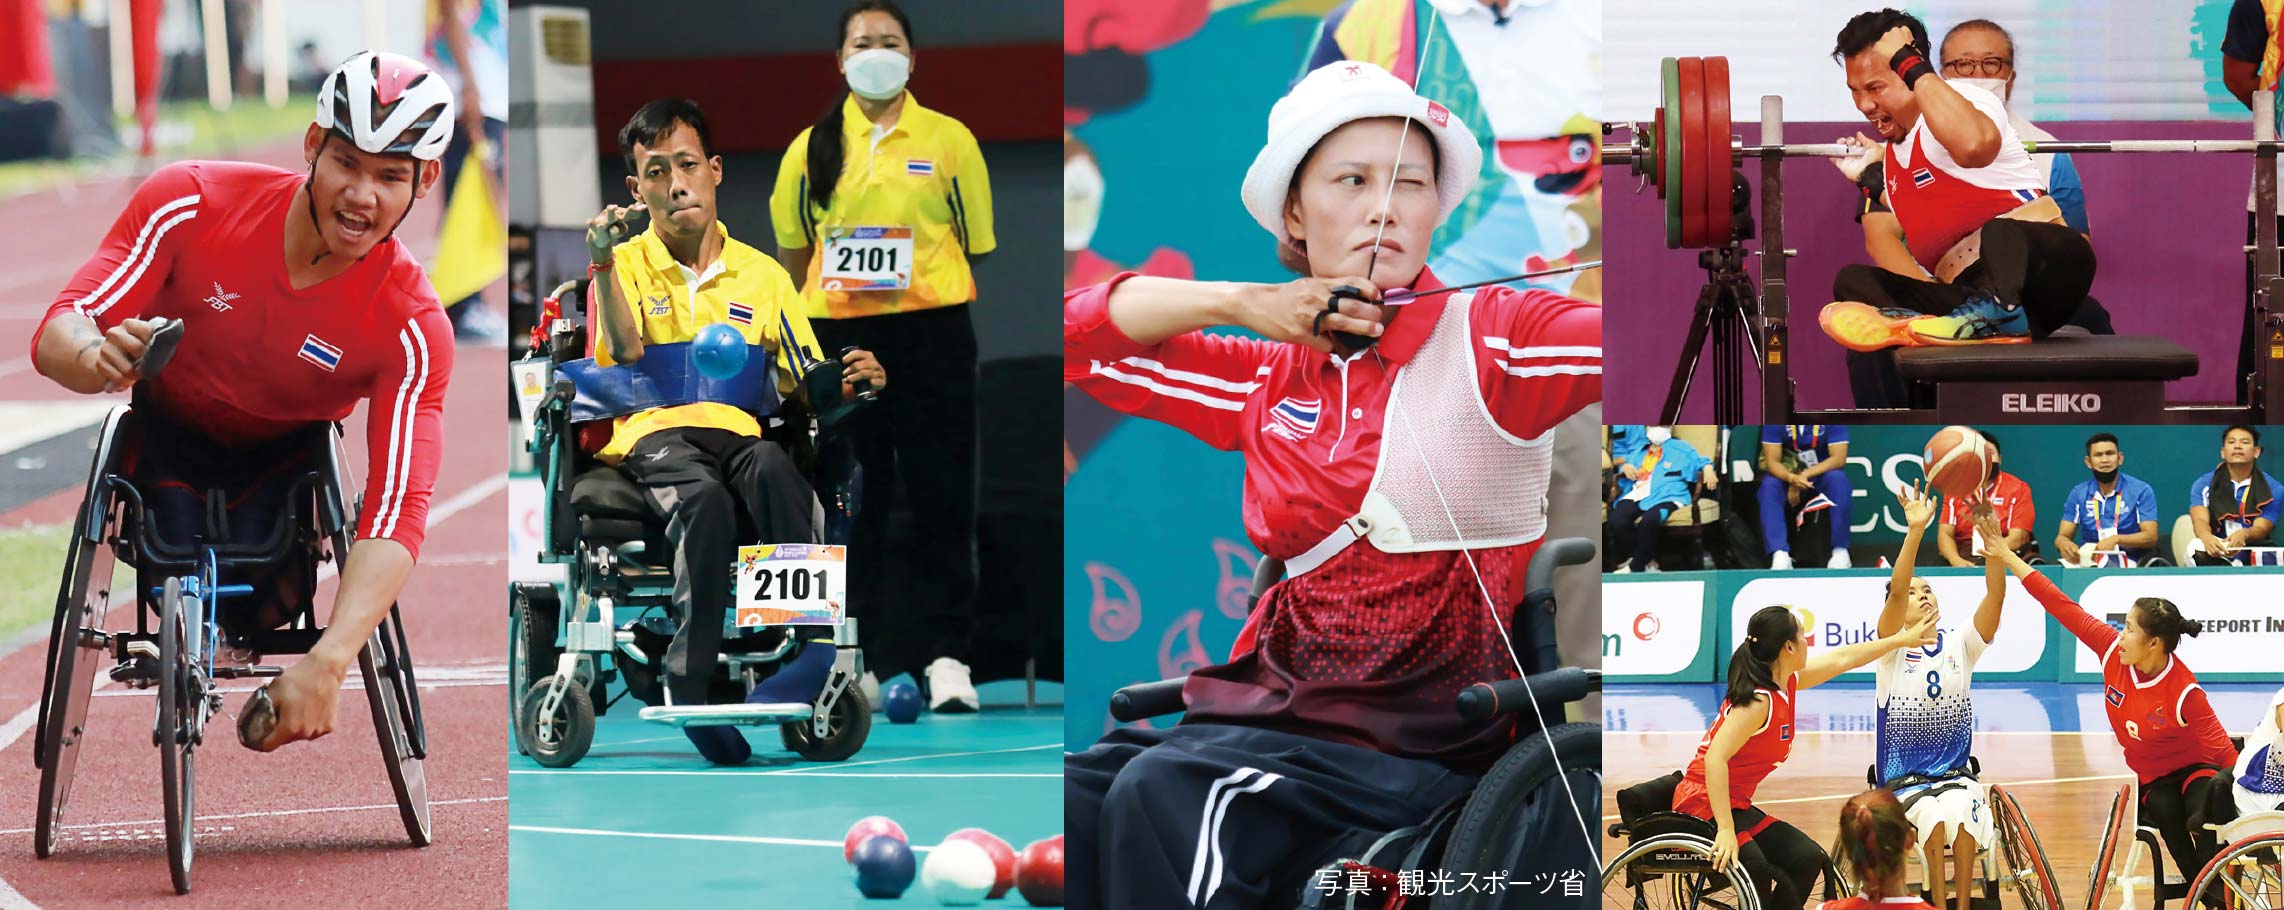 2022 ASEAN Para Games　タイ選手団が活躍　ー　7月30日〜8月6日にインドネシア・スラカルタ（ソロ）市で開催された東南アジア障害者スポーツ大会「2022 ASEAN Para Games」で、タイ選手団が活躍。車椅子陸上、車椅子バスケットボール、重量挙げ、アーチェリー、ボッチャなどの種目で、金116個、銀111個、銅90個を獲得した。